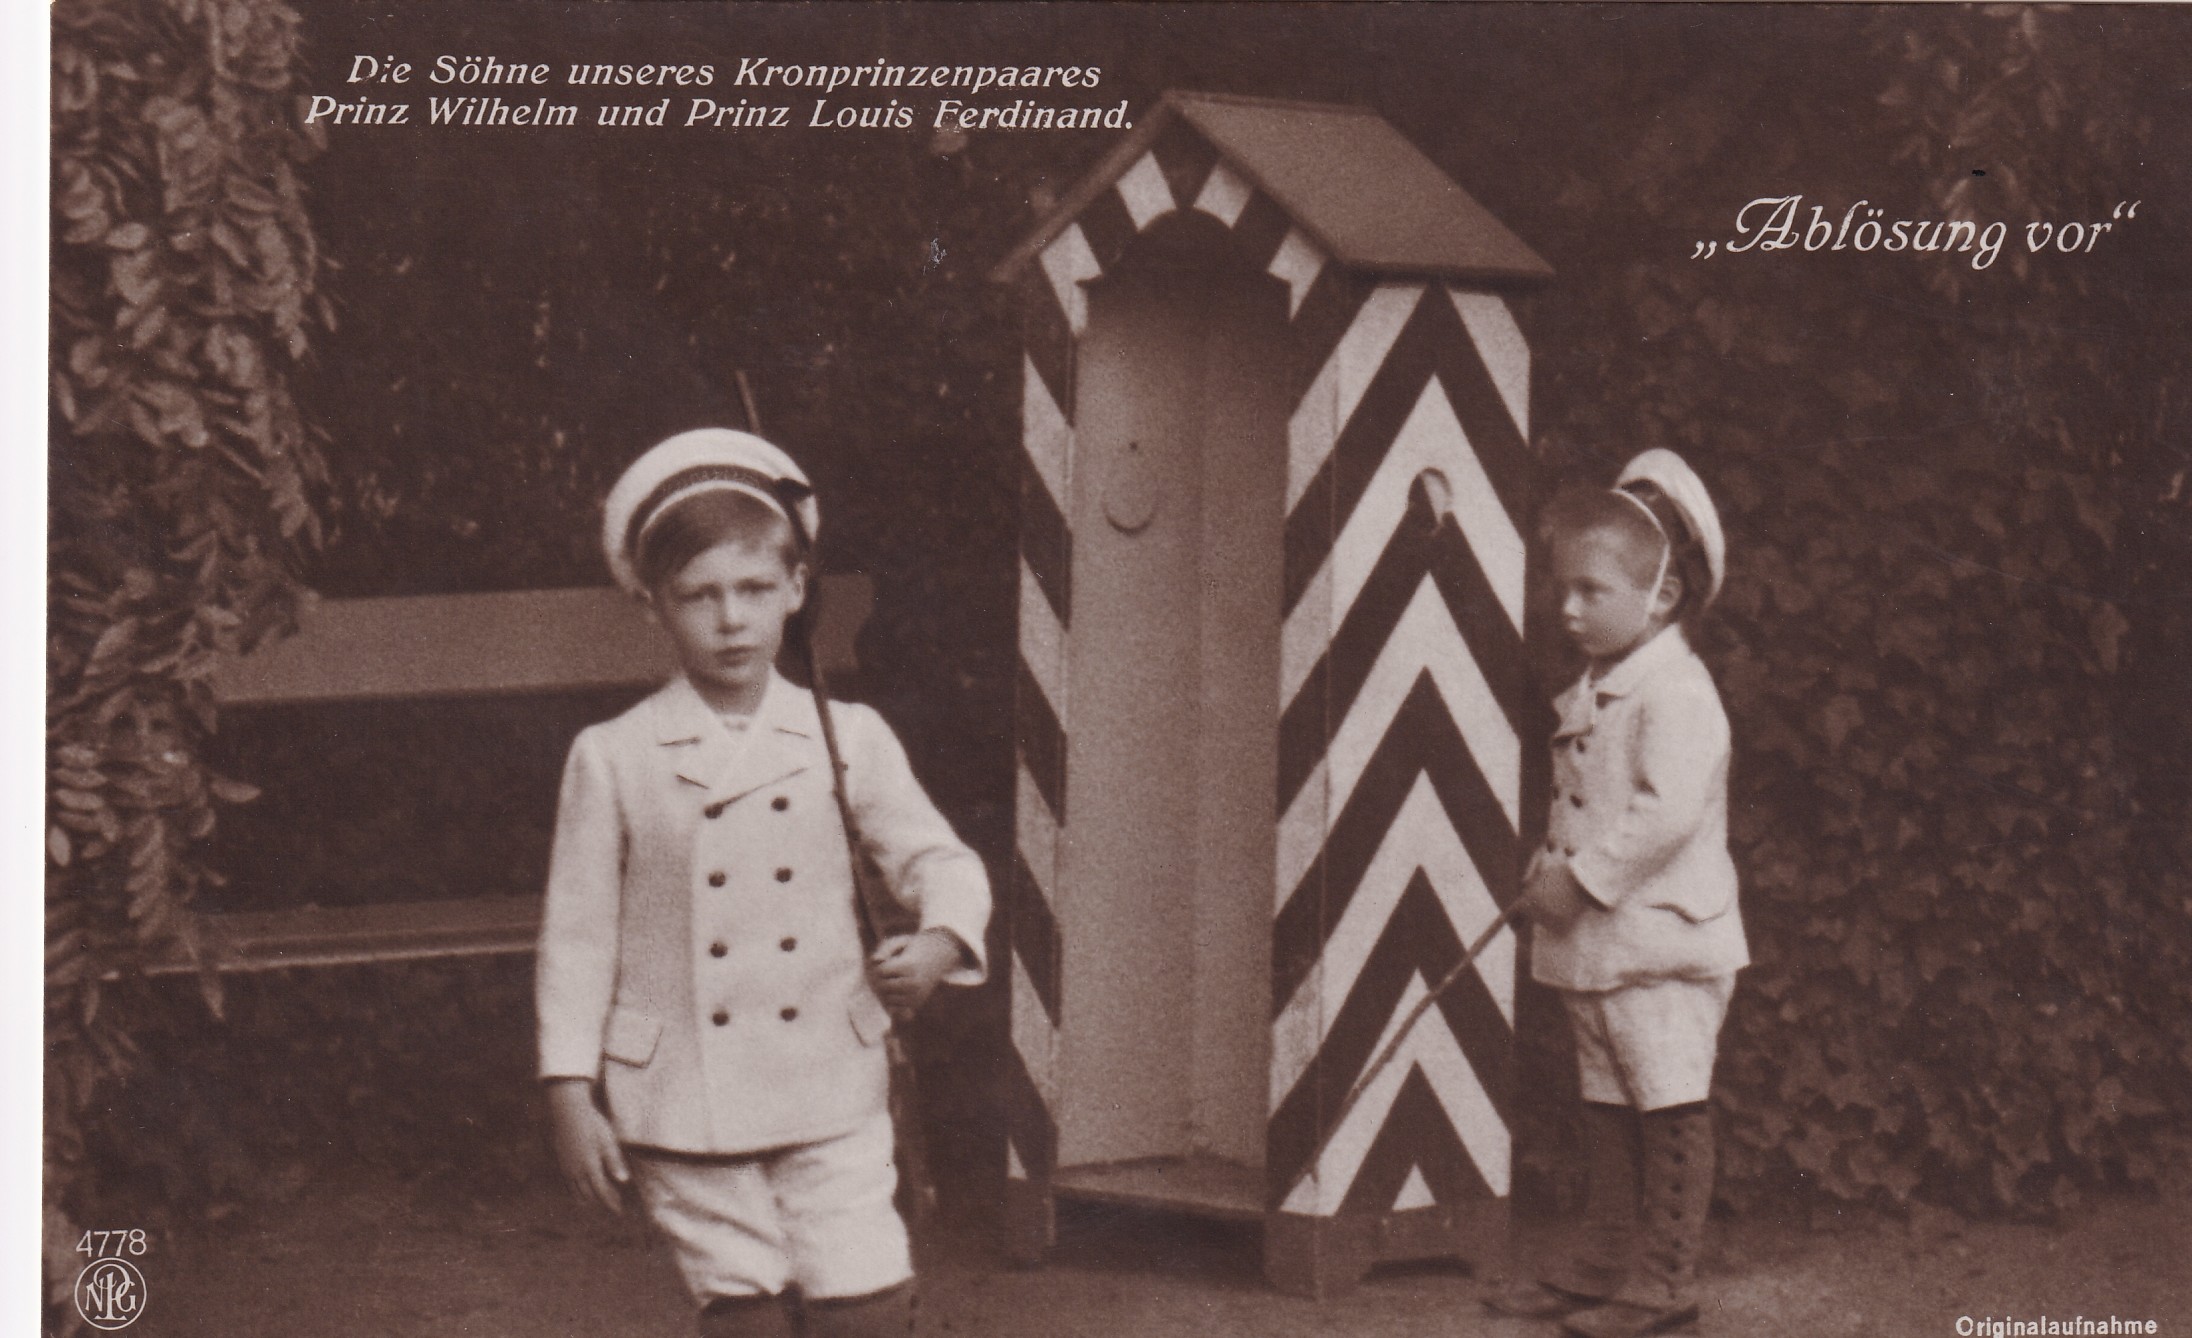 Bildpostkarte mit den beiden ältesten Söhnen des Kronprinzenpaares vor einem Wachhäuschen, 1910 (Schloß Wernigerode GmbH RR-F)